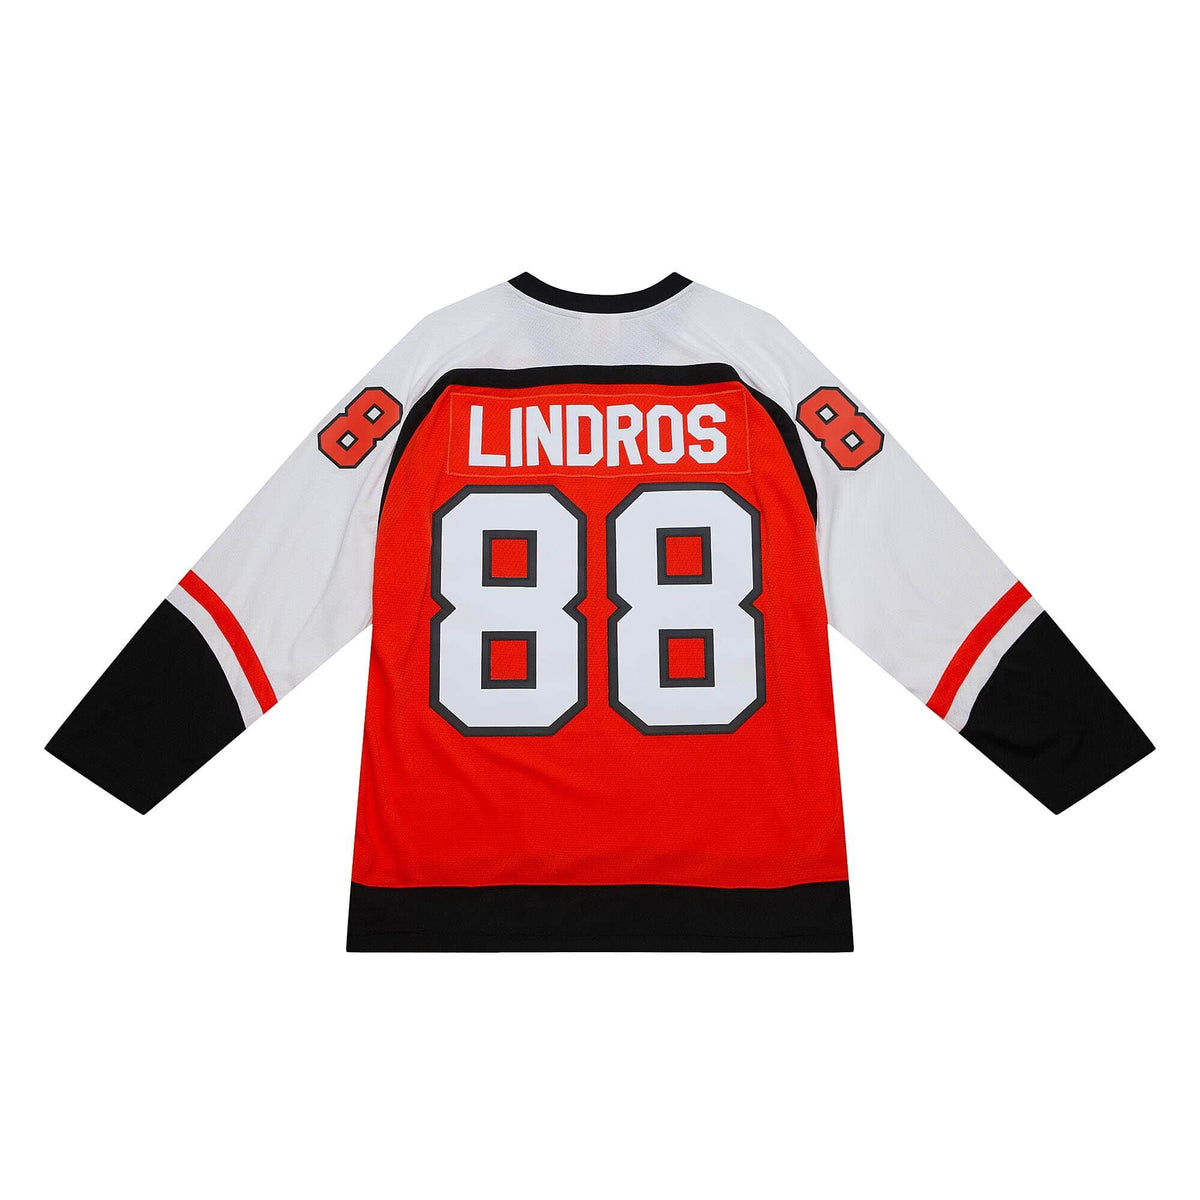 Eric Lindros Signed Philadelphia Flyers Replica Orange Jersey